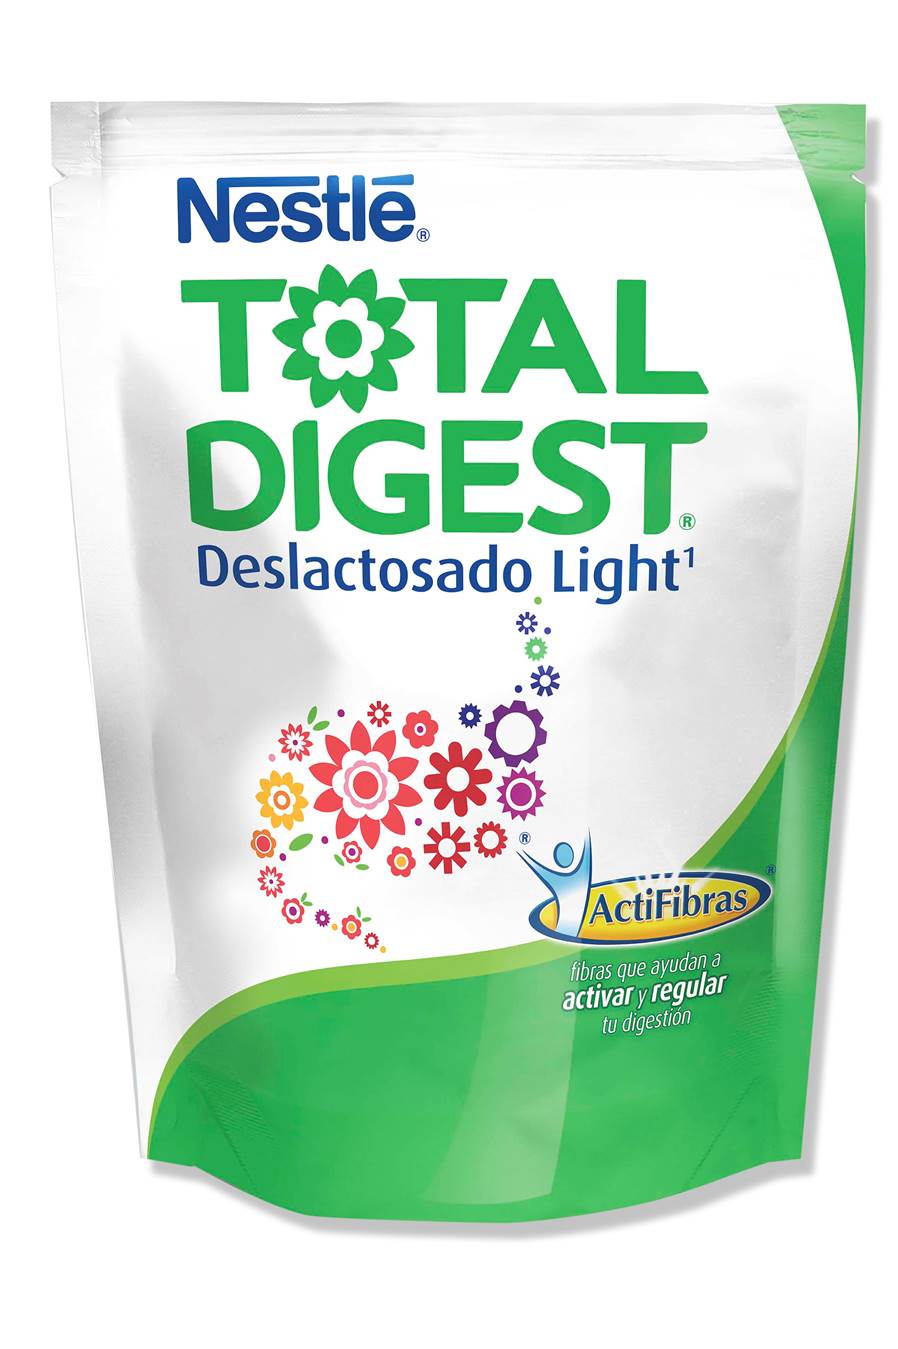 Total Digest, el nuevo aliado para su digestión